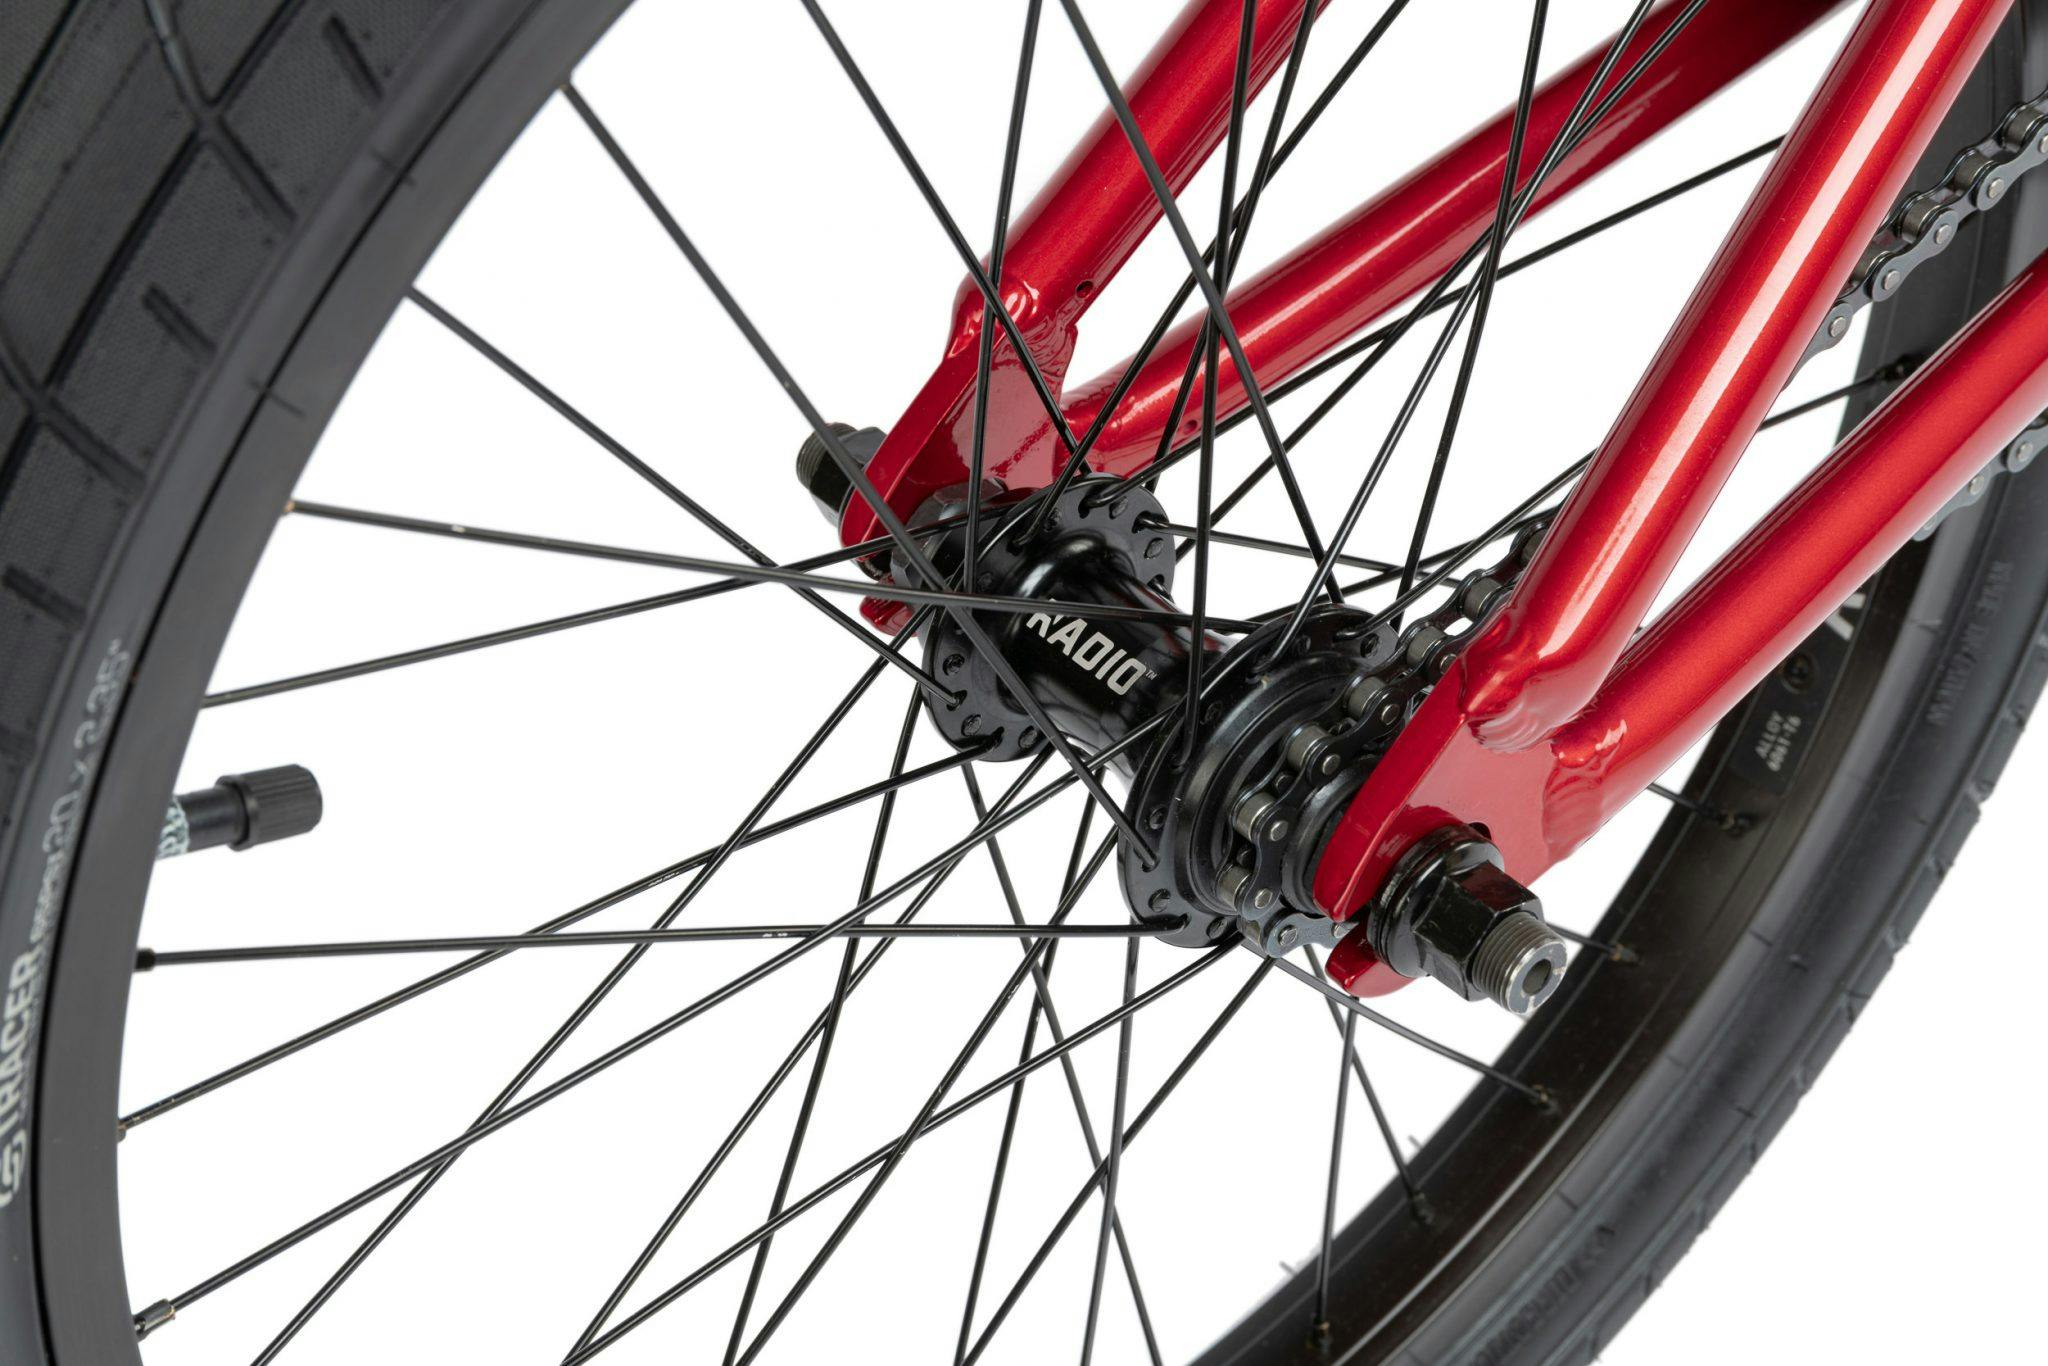 Radio Dice 20" BMX Bike · Candy Red · One size